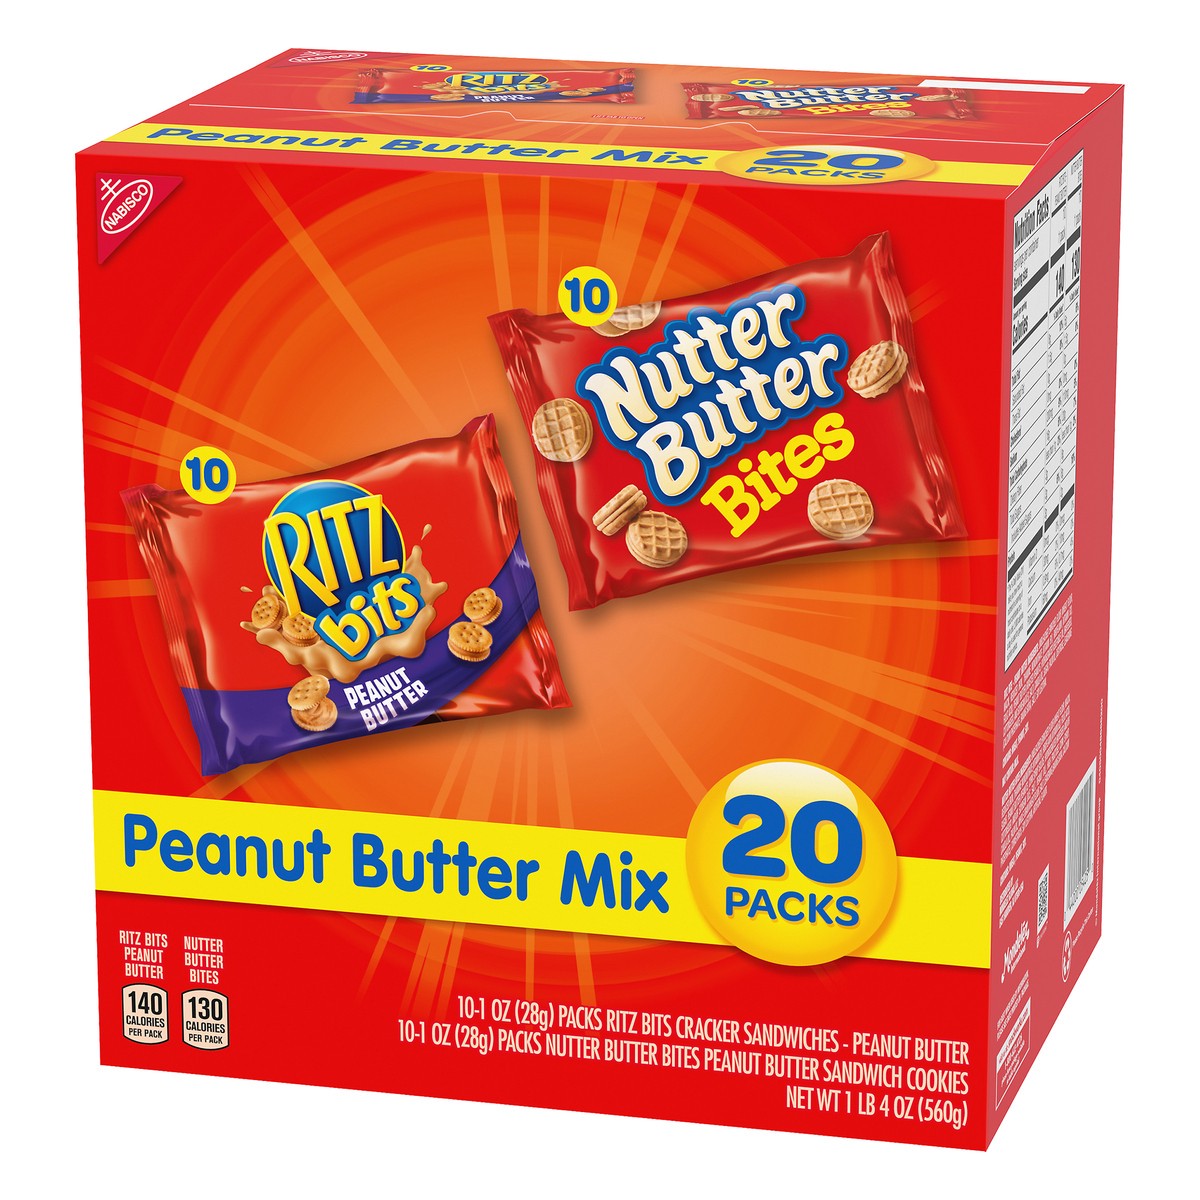 slide 3 of 7, Ritz 20 Packs Peanut Butter Mix Peanut Butter Mix 20 ea, 20 ct